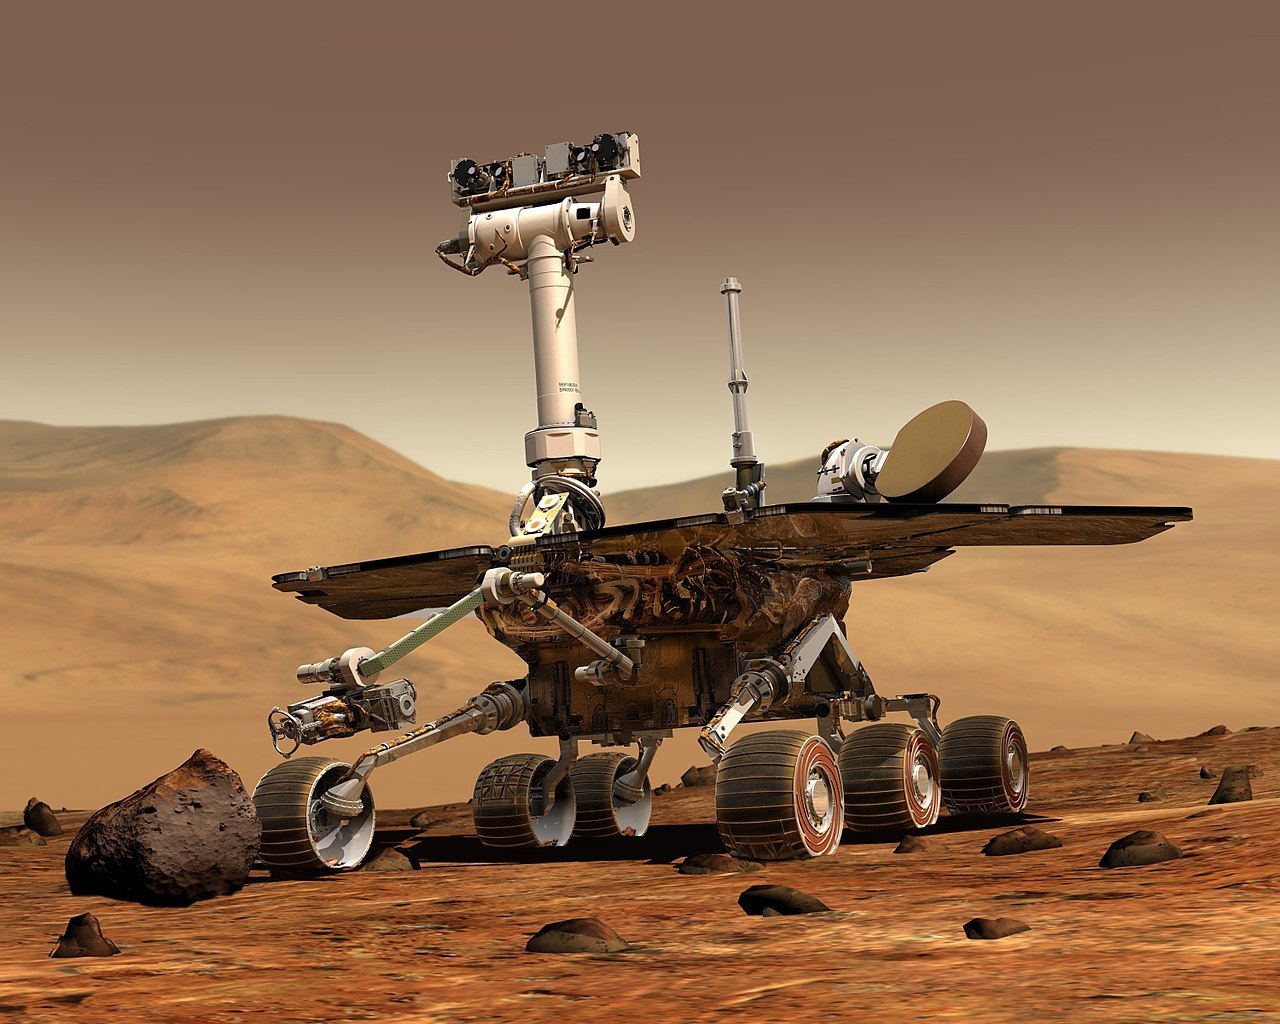 Sprit rover on Mars, artist rendition